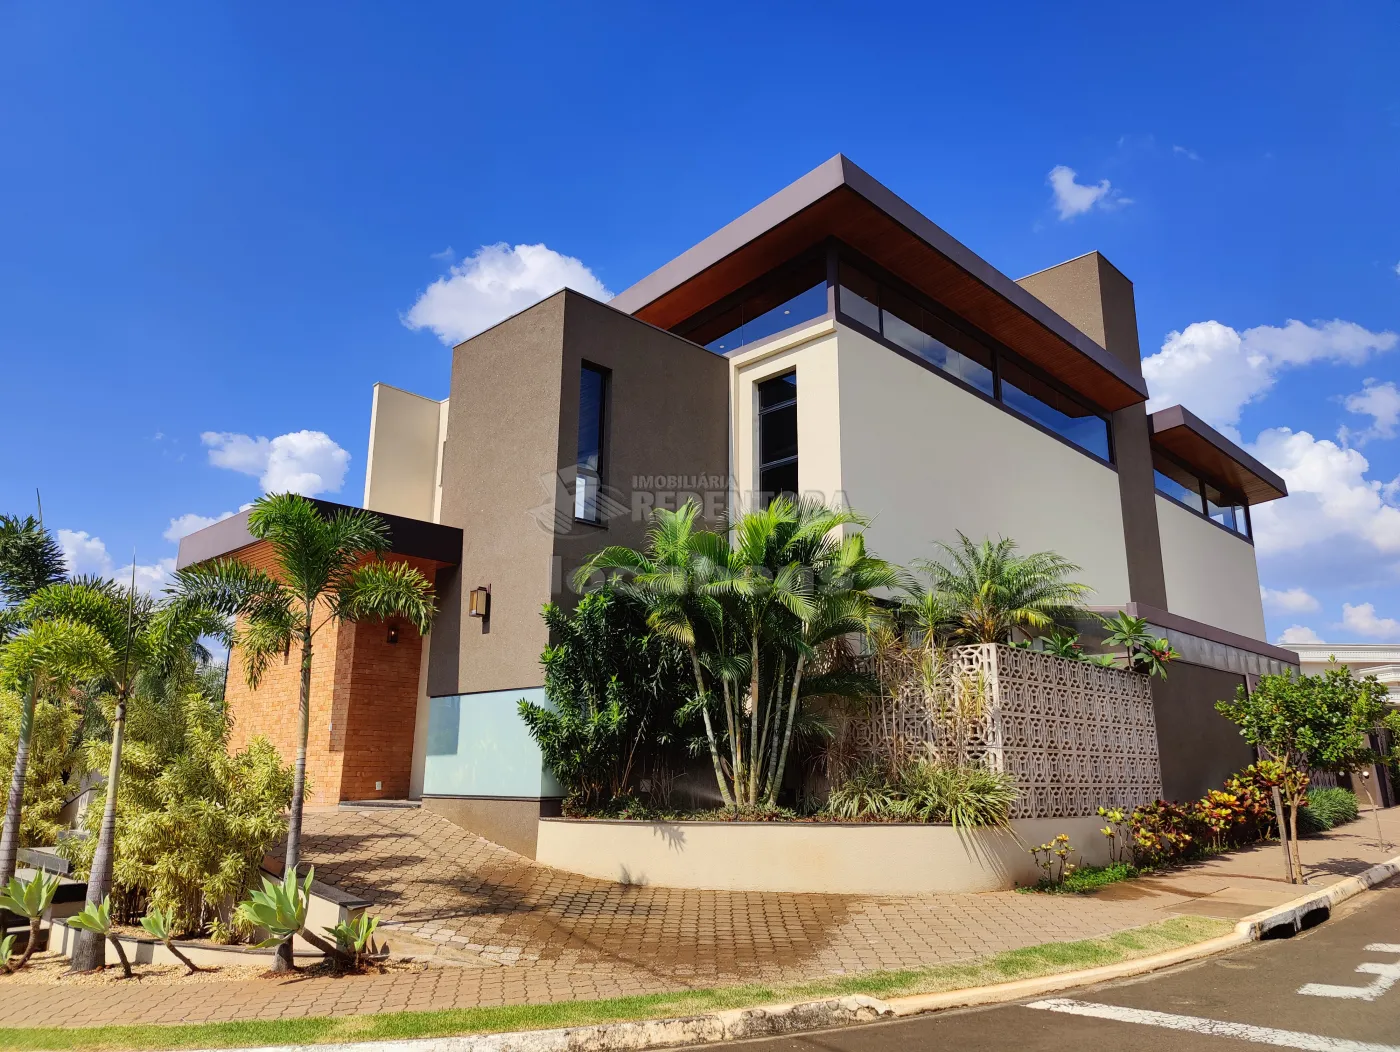 Comprar Casa / Condomínio em Mirassol apenas R$ 2.850.000,00 - Foto 6